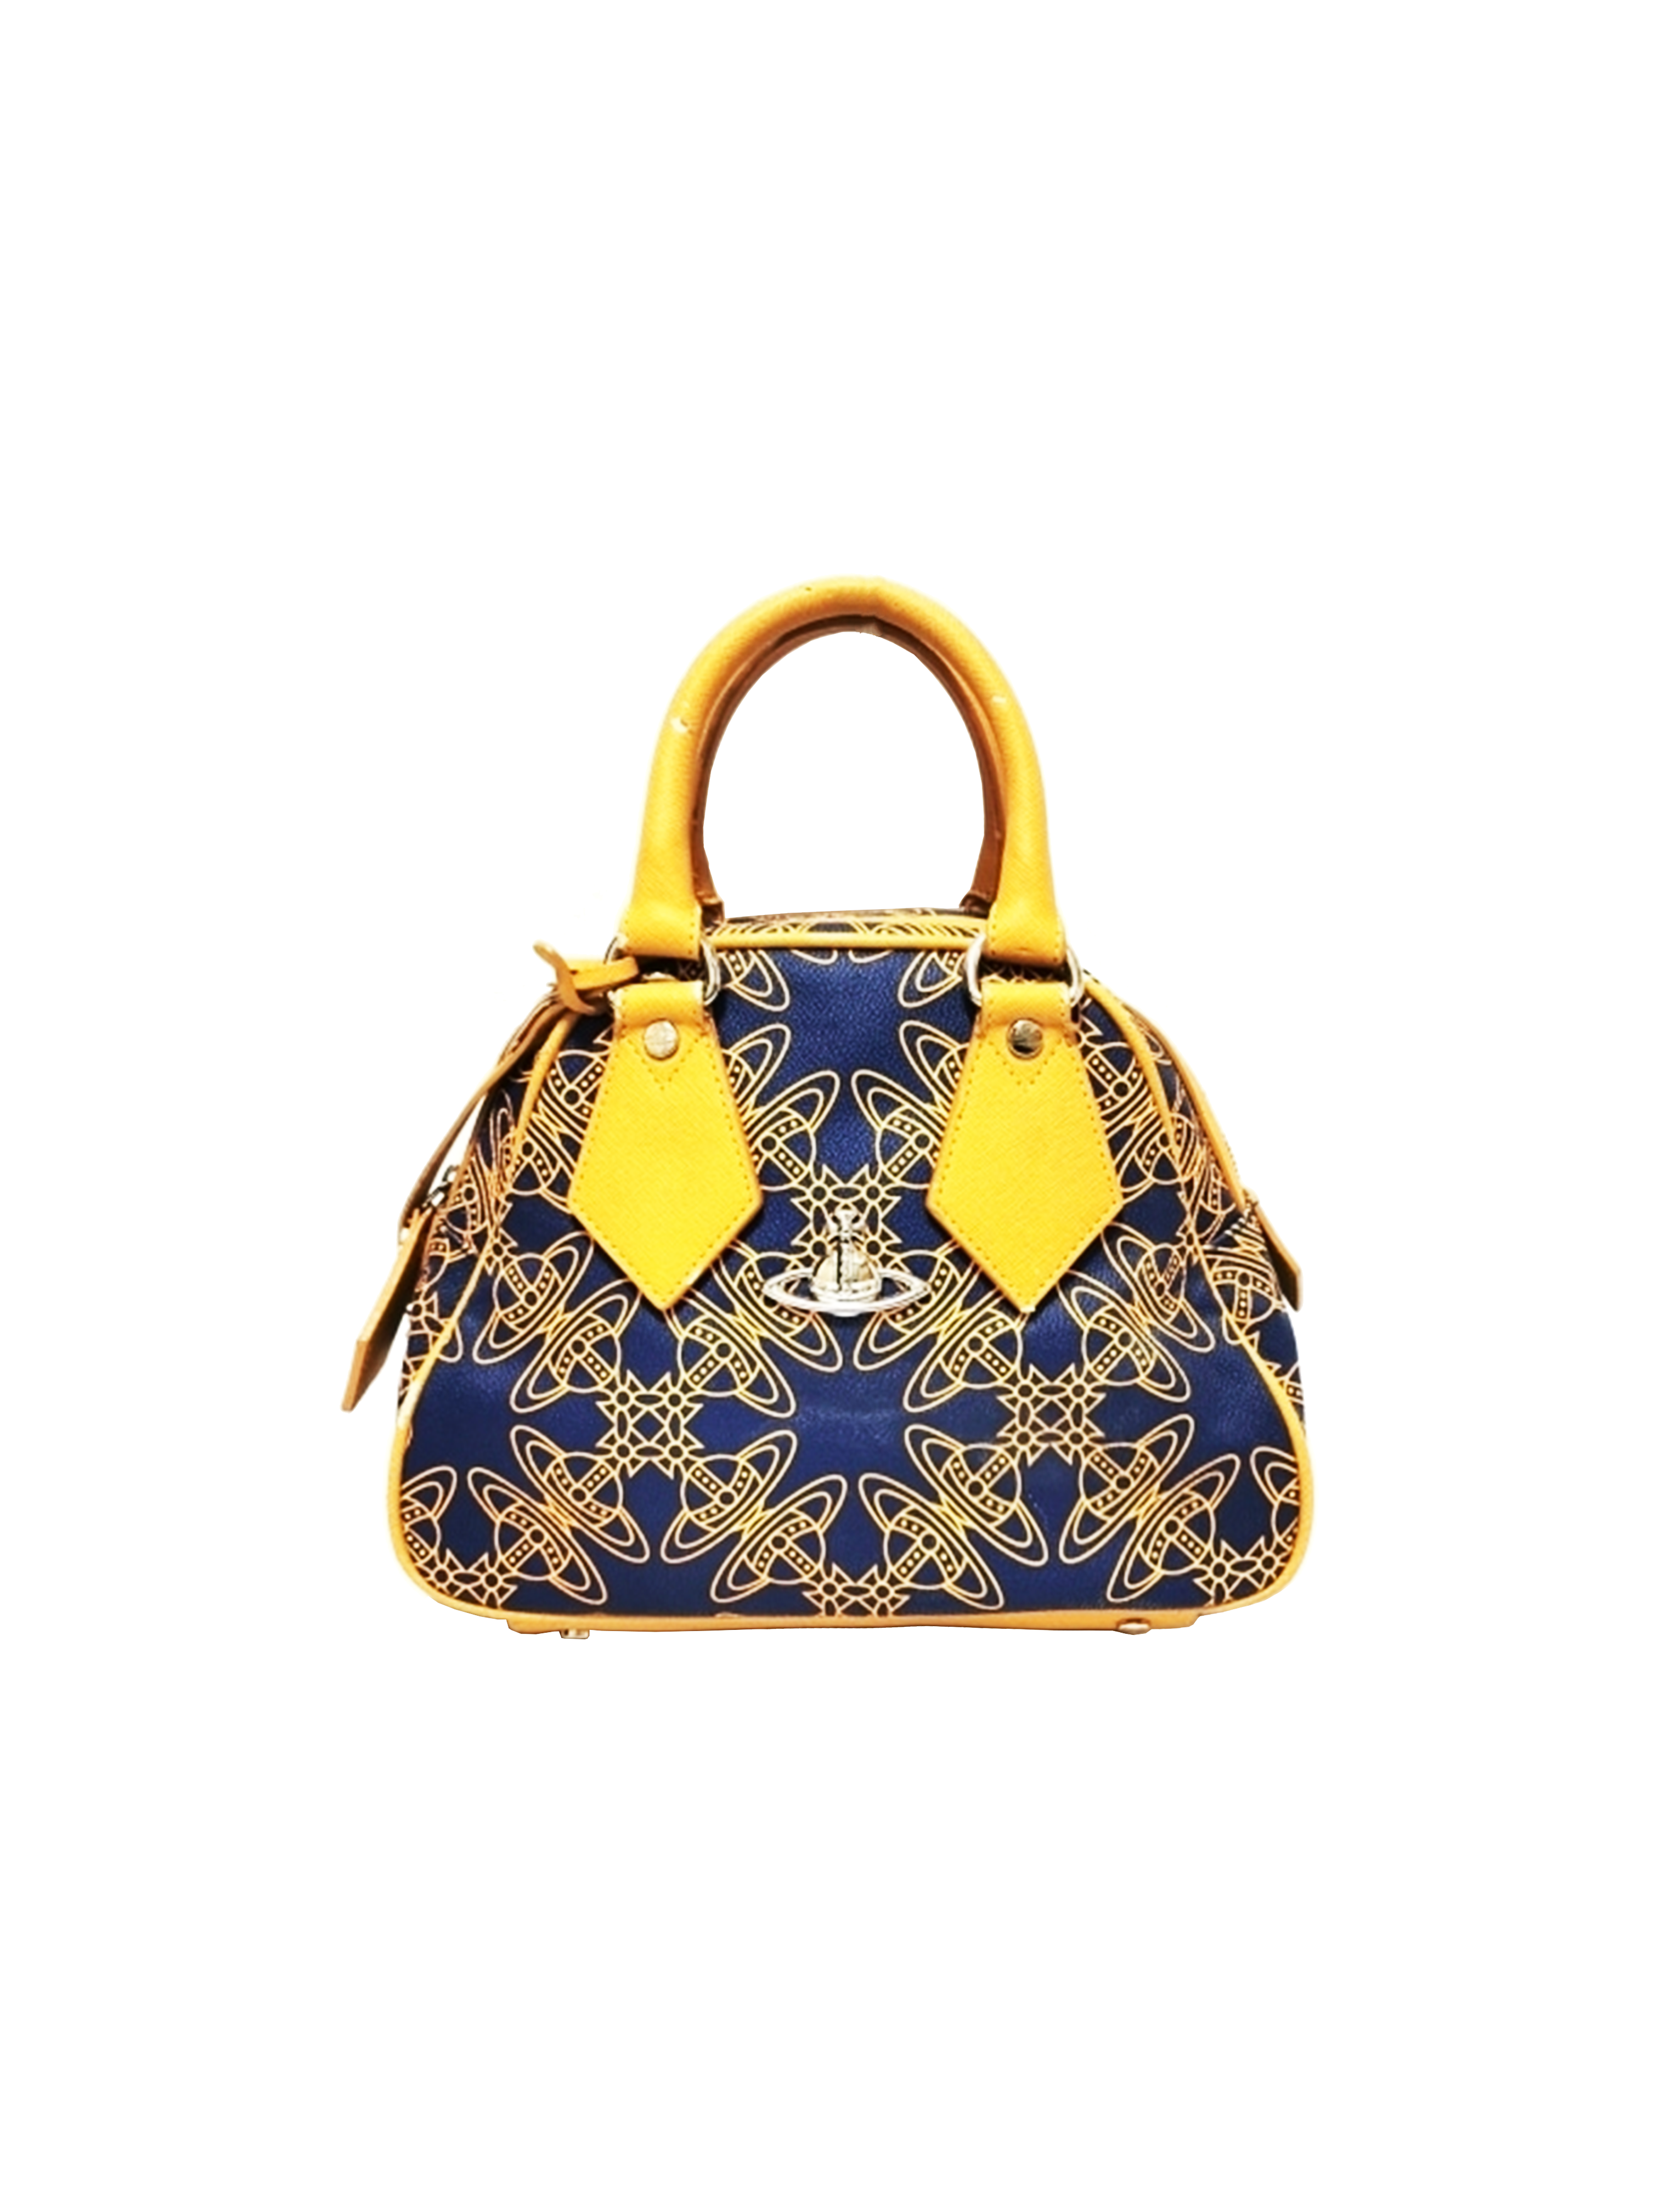 Vivienne Westwood 2000s Small Multi-Orb Handbag